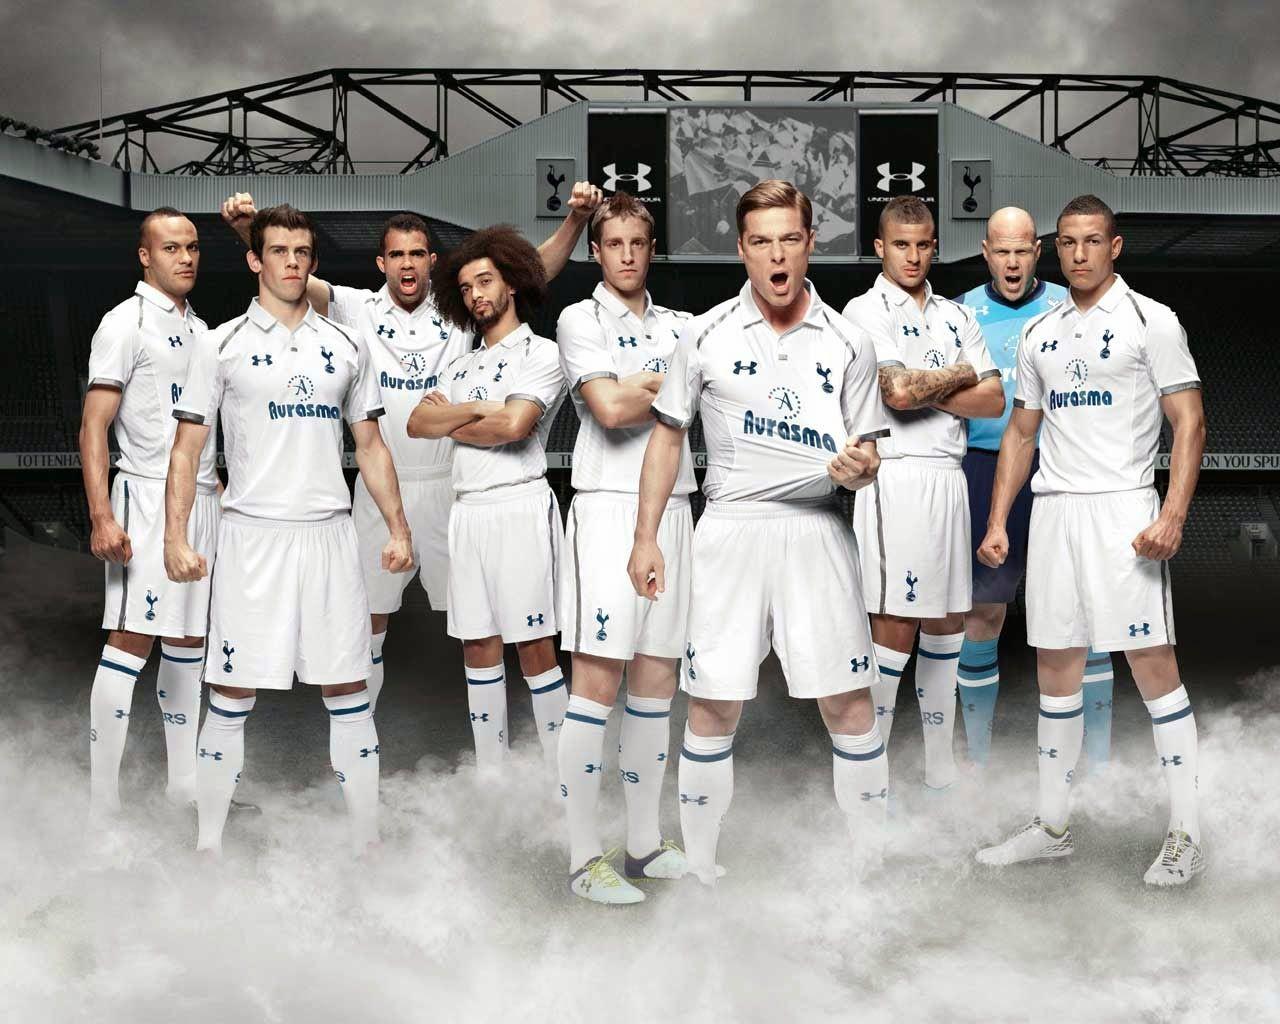 Download Tottenham Hotspur Wallpaper HD Wallpaper